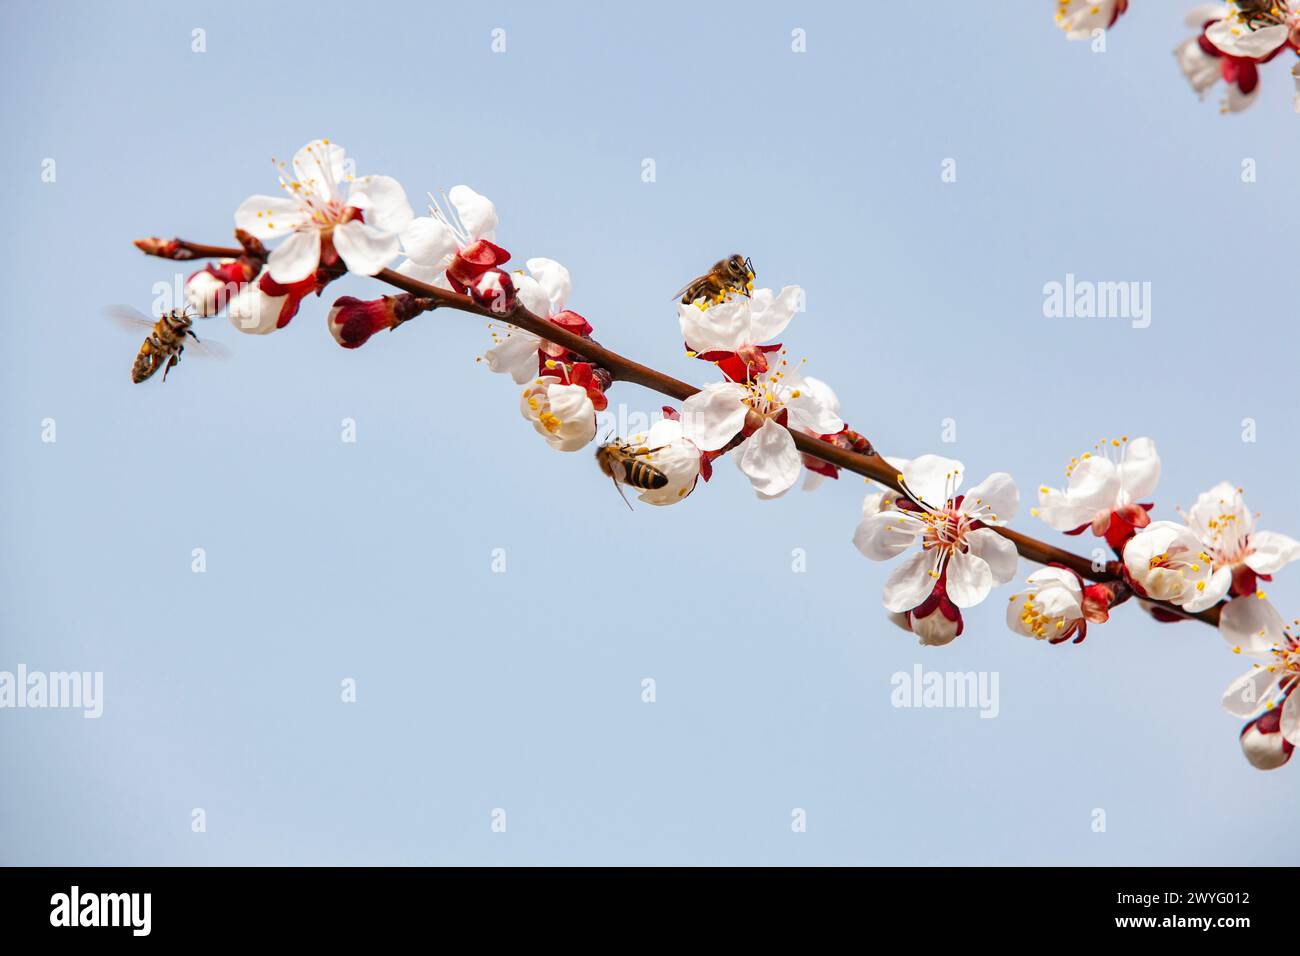 Bienen bestäuben blühende Aprikosen auf einer Plantage. Imkerei und Obstbau. Nahaufnahme, Kopierbereich. Stockfoto